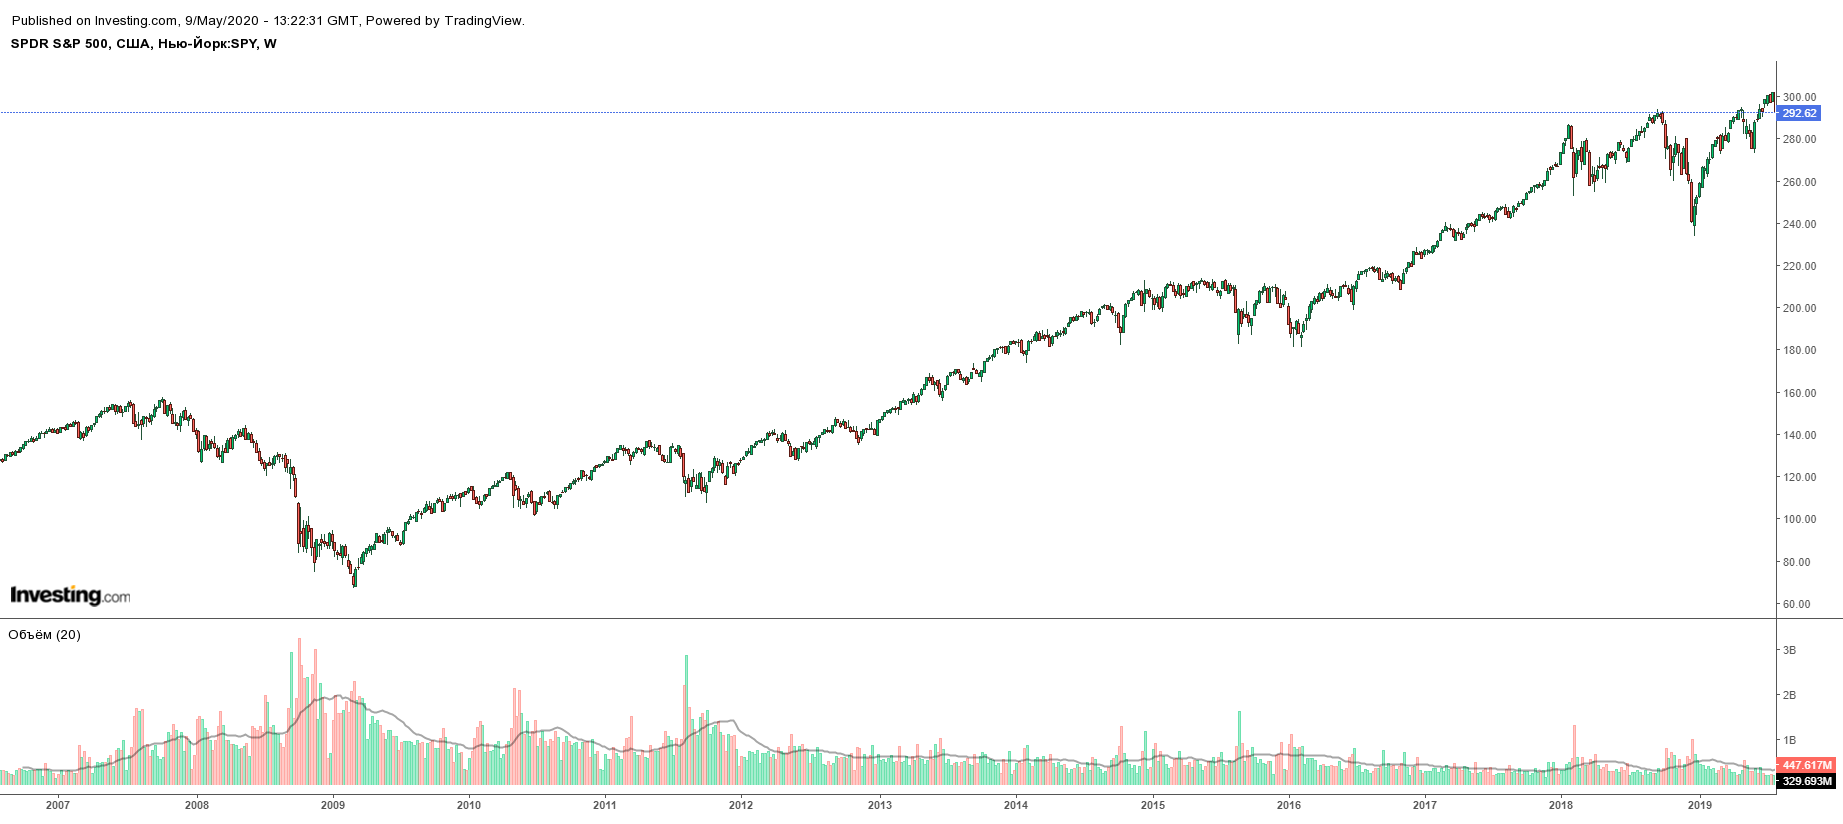 Недельный график цены ETF SPY — биржевого фонда на американский индекс S&P 500. Во время финансового кризиса 2007⁠—⁠2008 годов цены упали, но потом выросли. В конце 2018 и весной 2020 цены тоже упали, а потом выросли